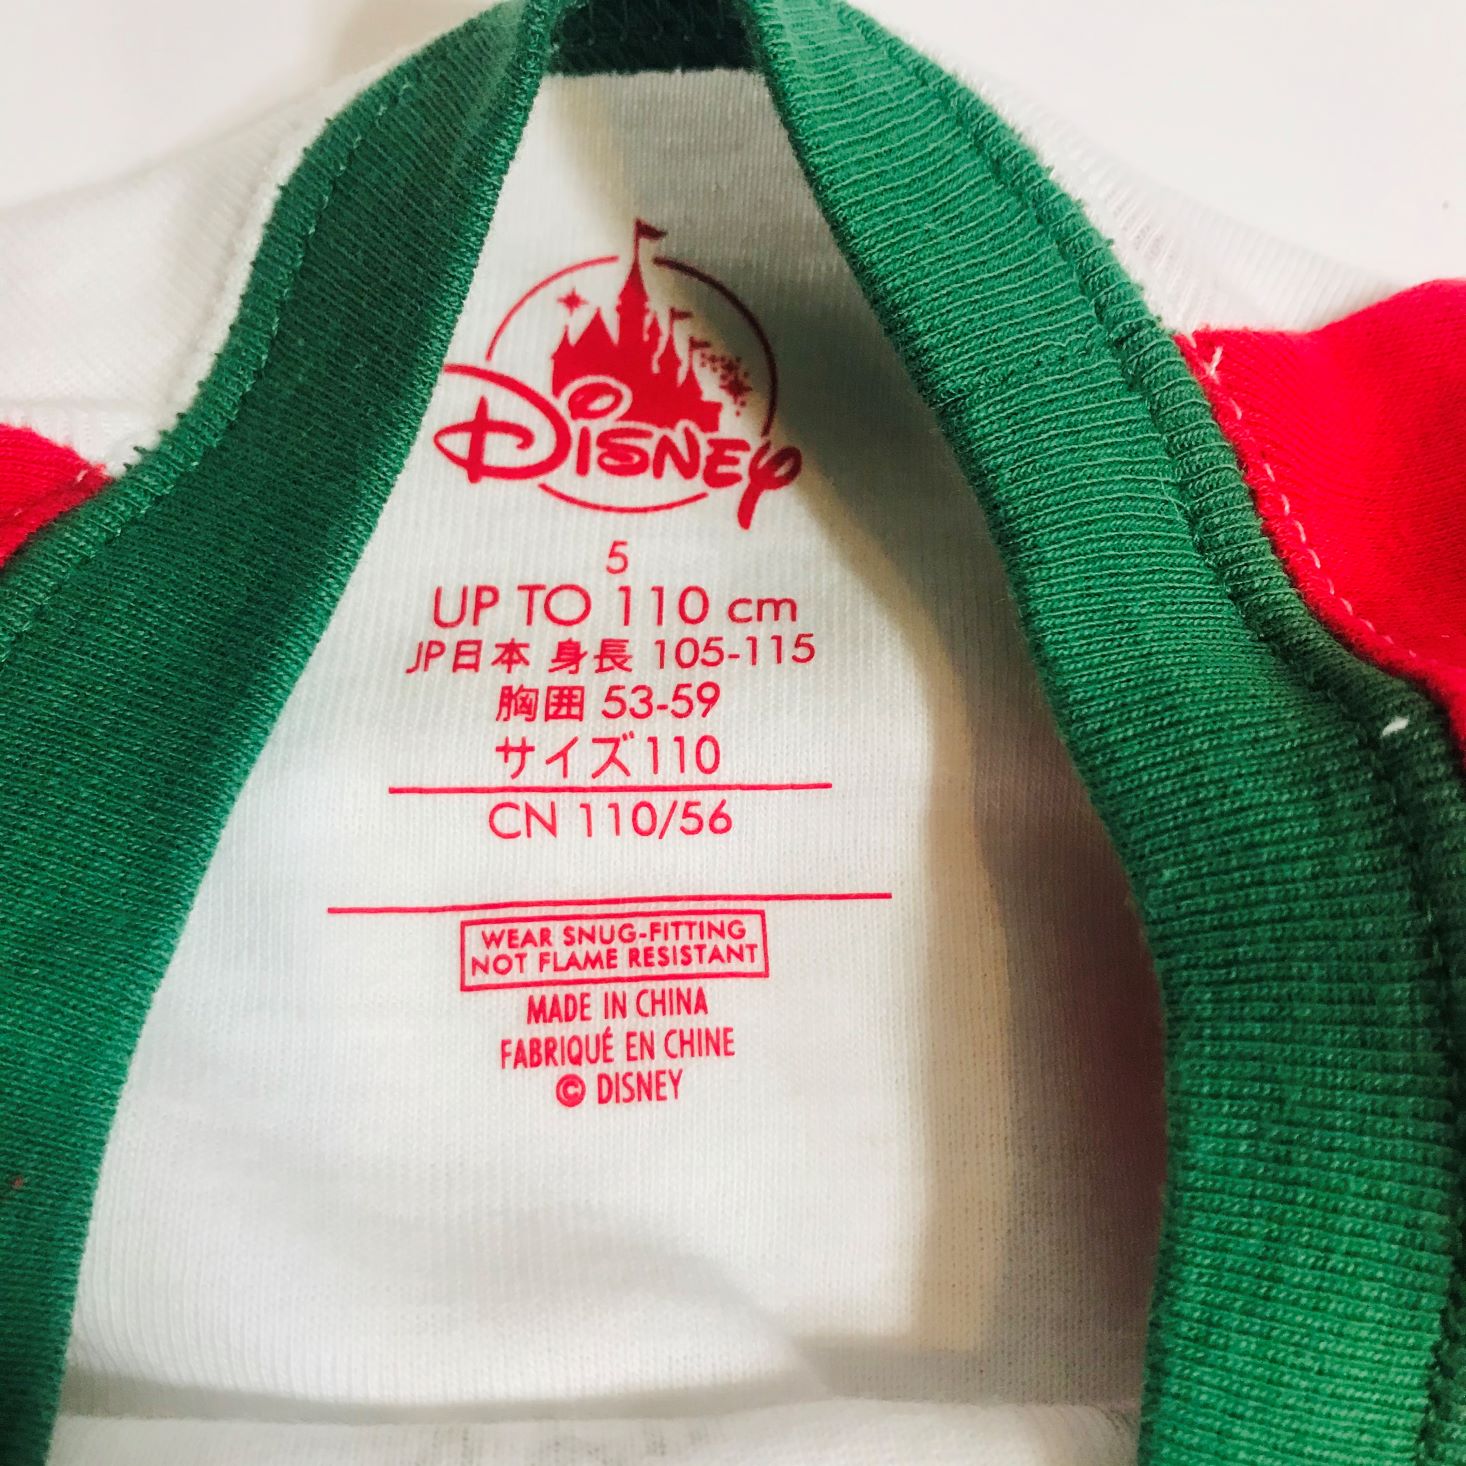 Disney Bedtime Box November 2019 shirt tag up close